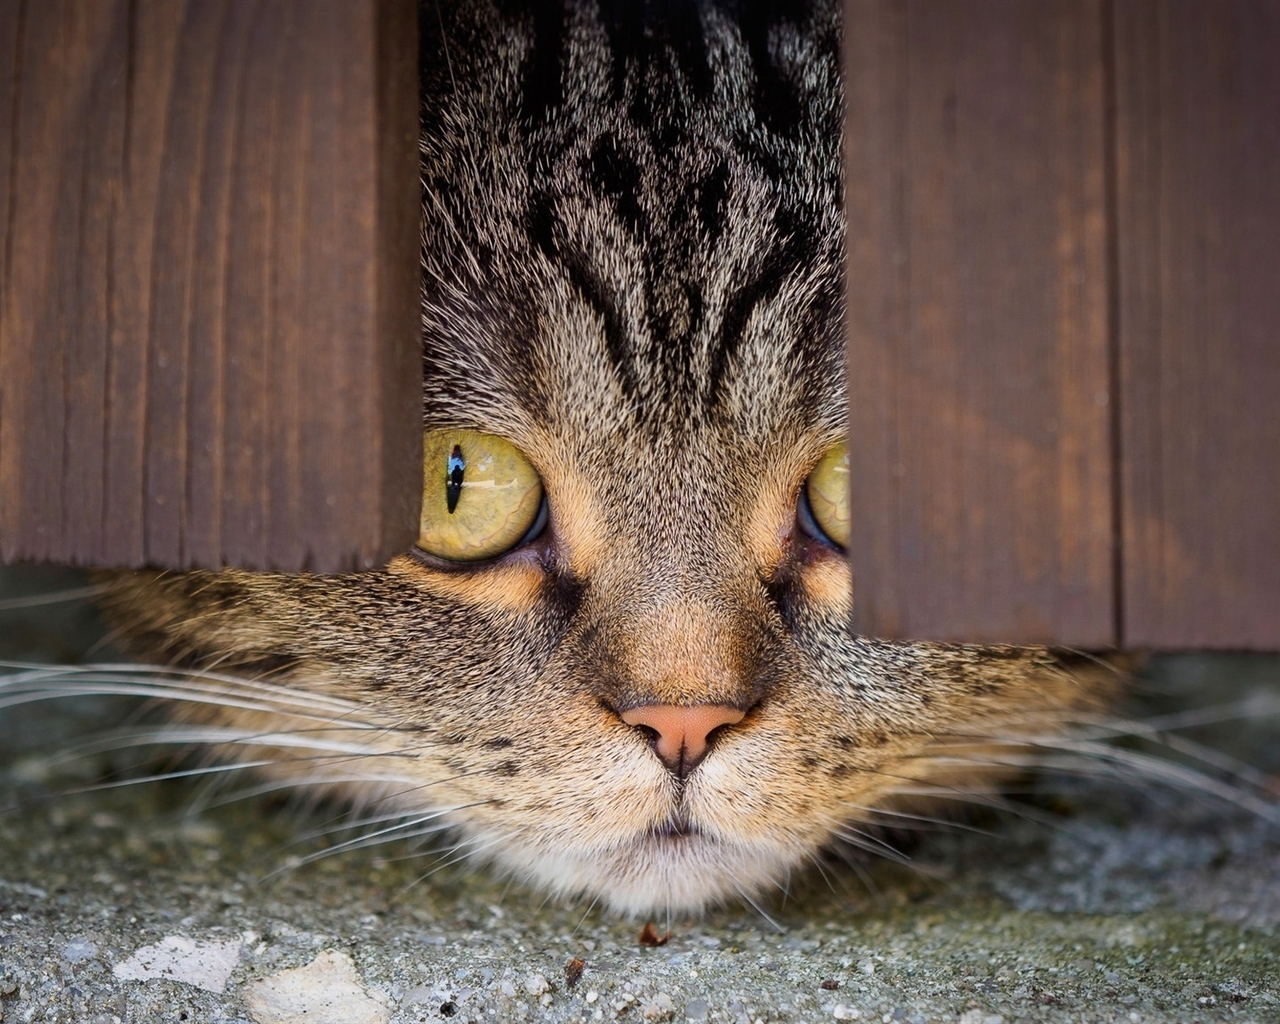 Image: Cat, muzzle, eyes, looks, fence